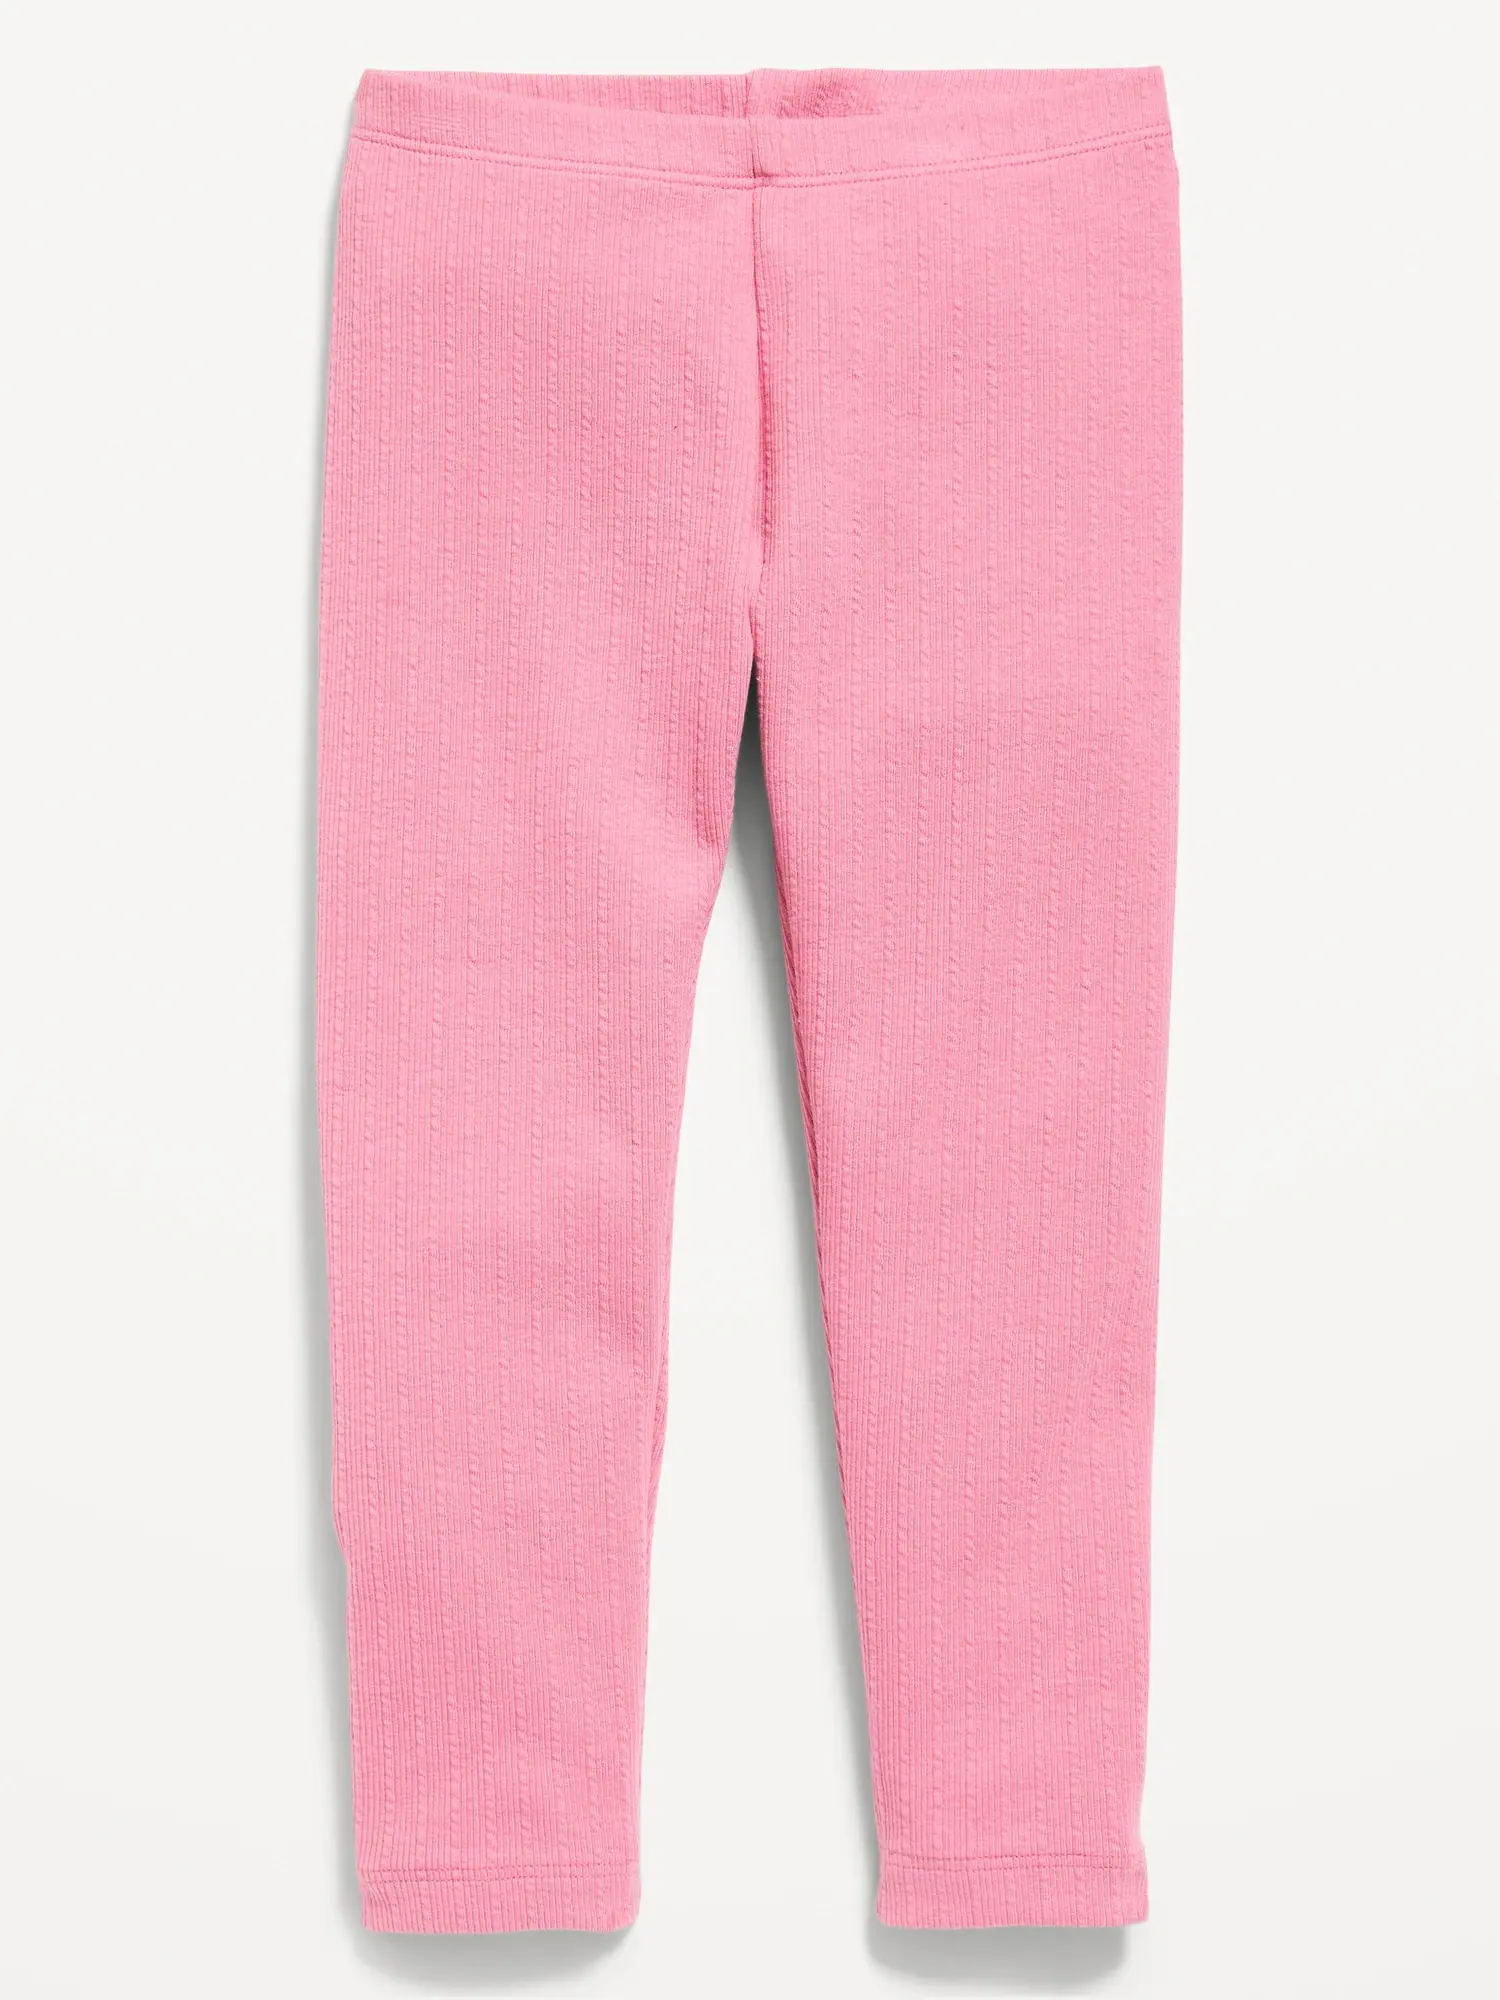 Old Navy Textured-Knit Full-Length Leggings for Toddler Girls pink. 1